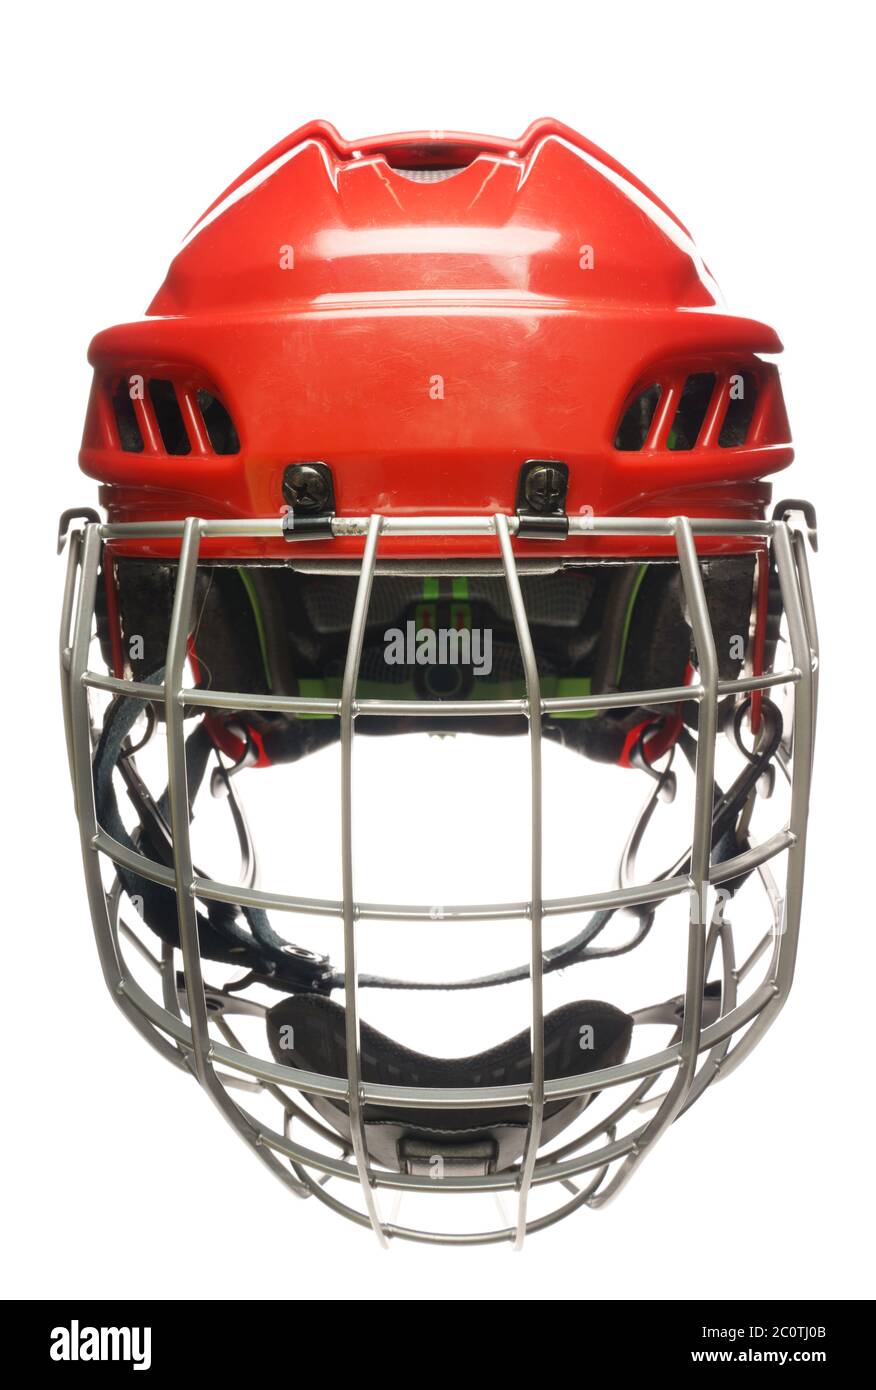 Hockey helmet isolated Stock Photo